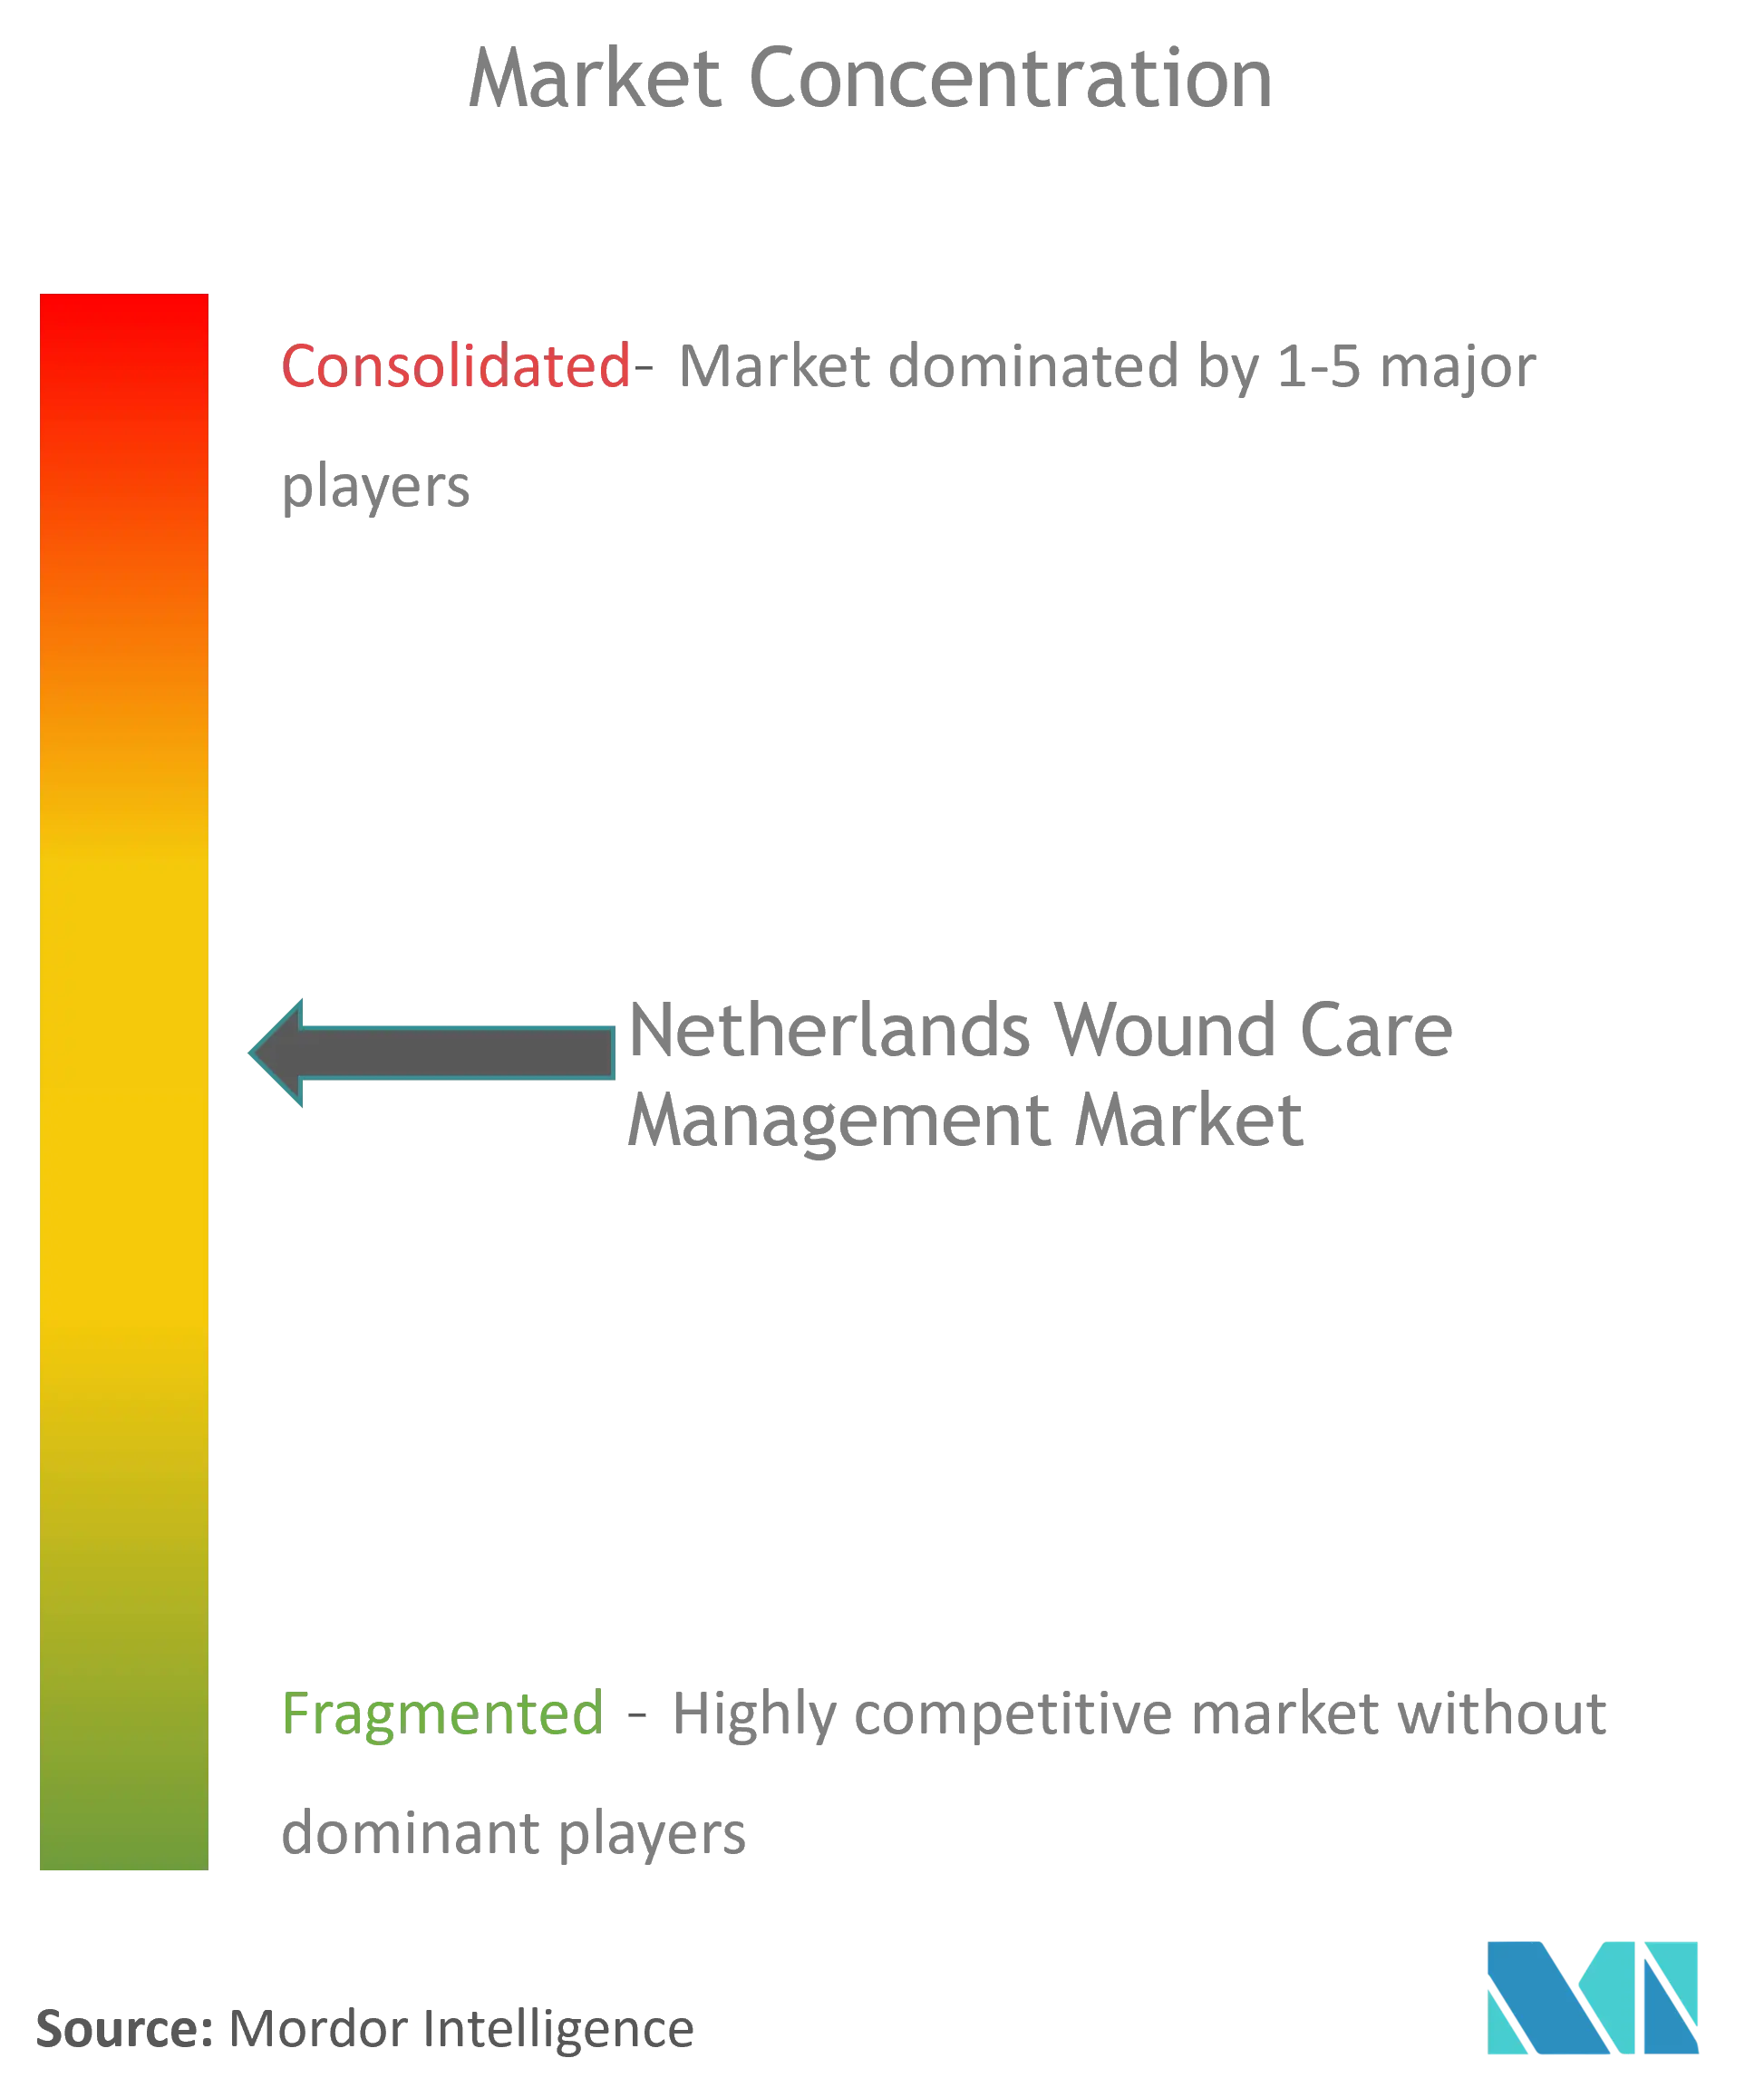 Netherlands Wound Care Management Market Concentration